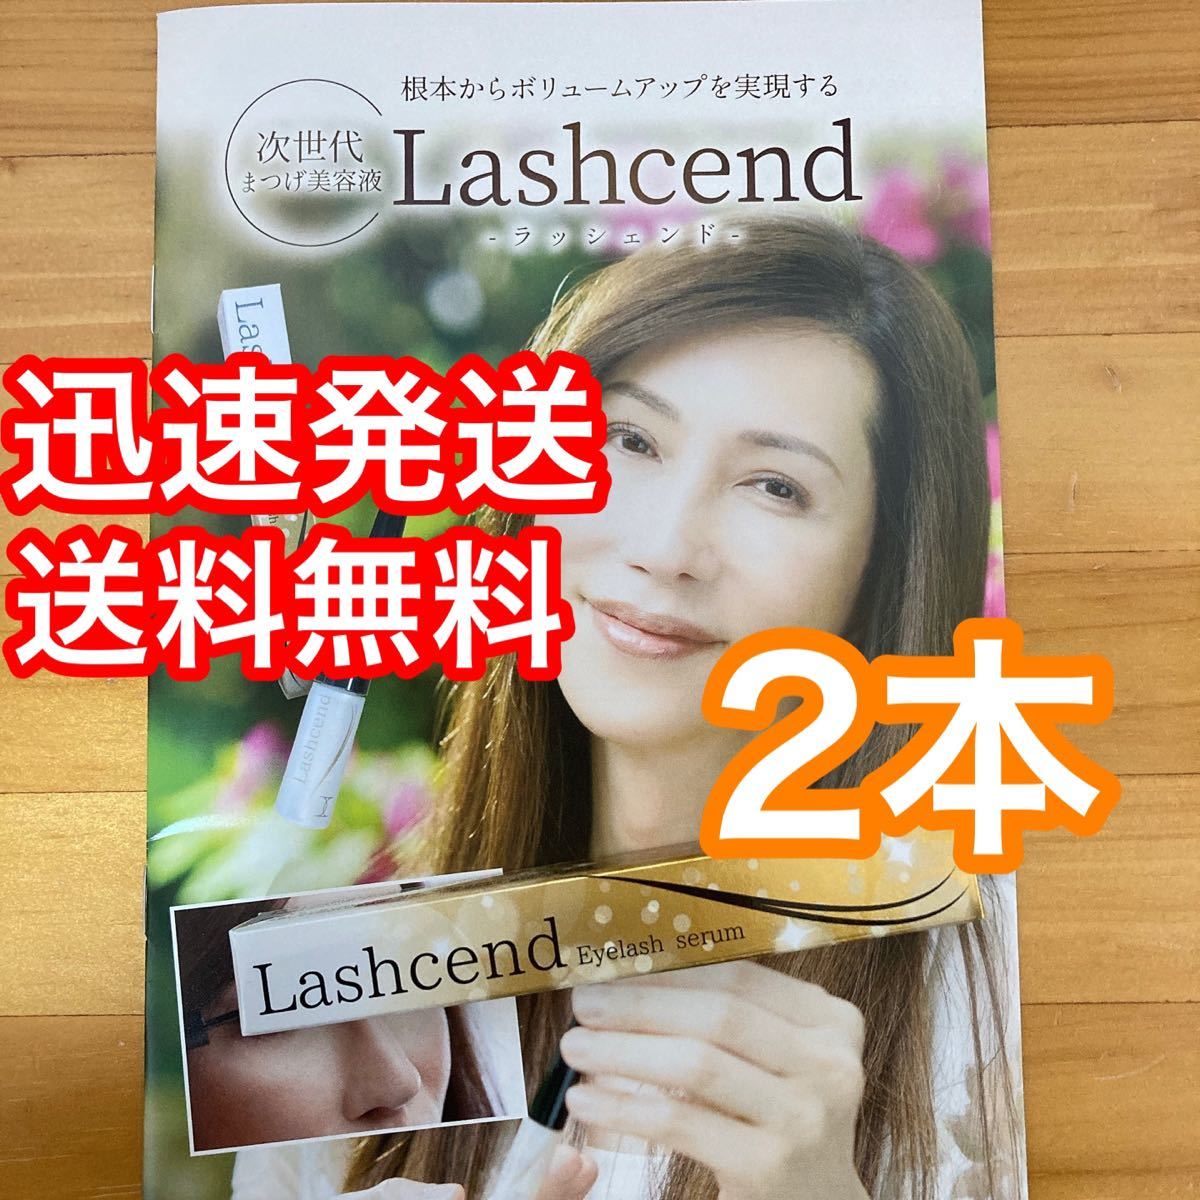 2本セット Lashcend Eyelash serum ラッシェンド (まつ毛美容液